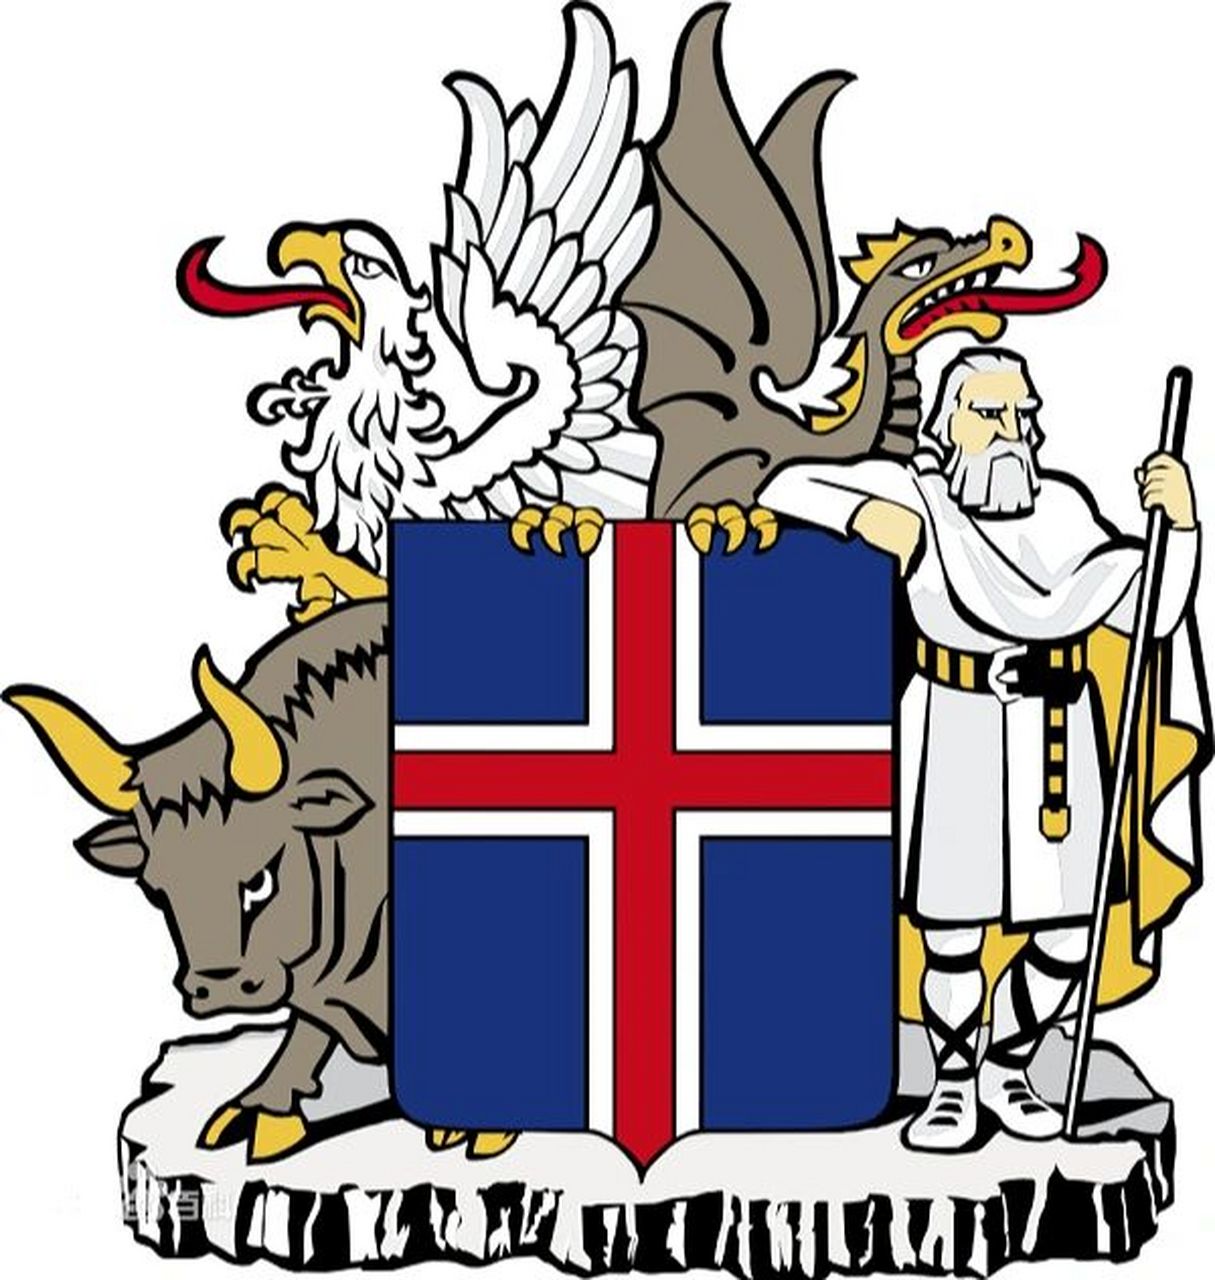 北欧五国(二)体制 冰岛国旗9699&国徽98: 冰岛共和国国旗采用的